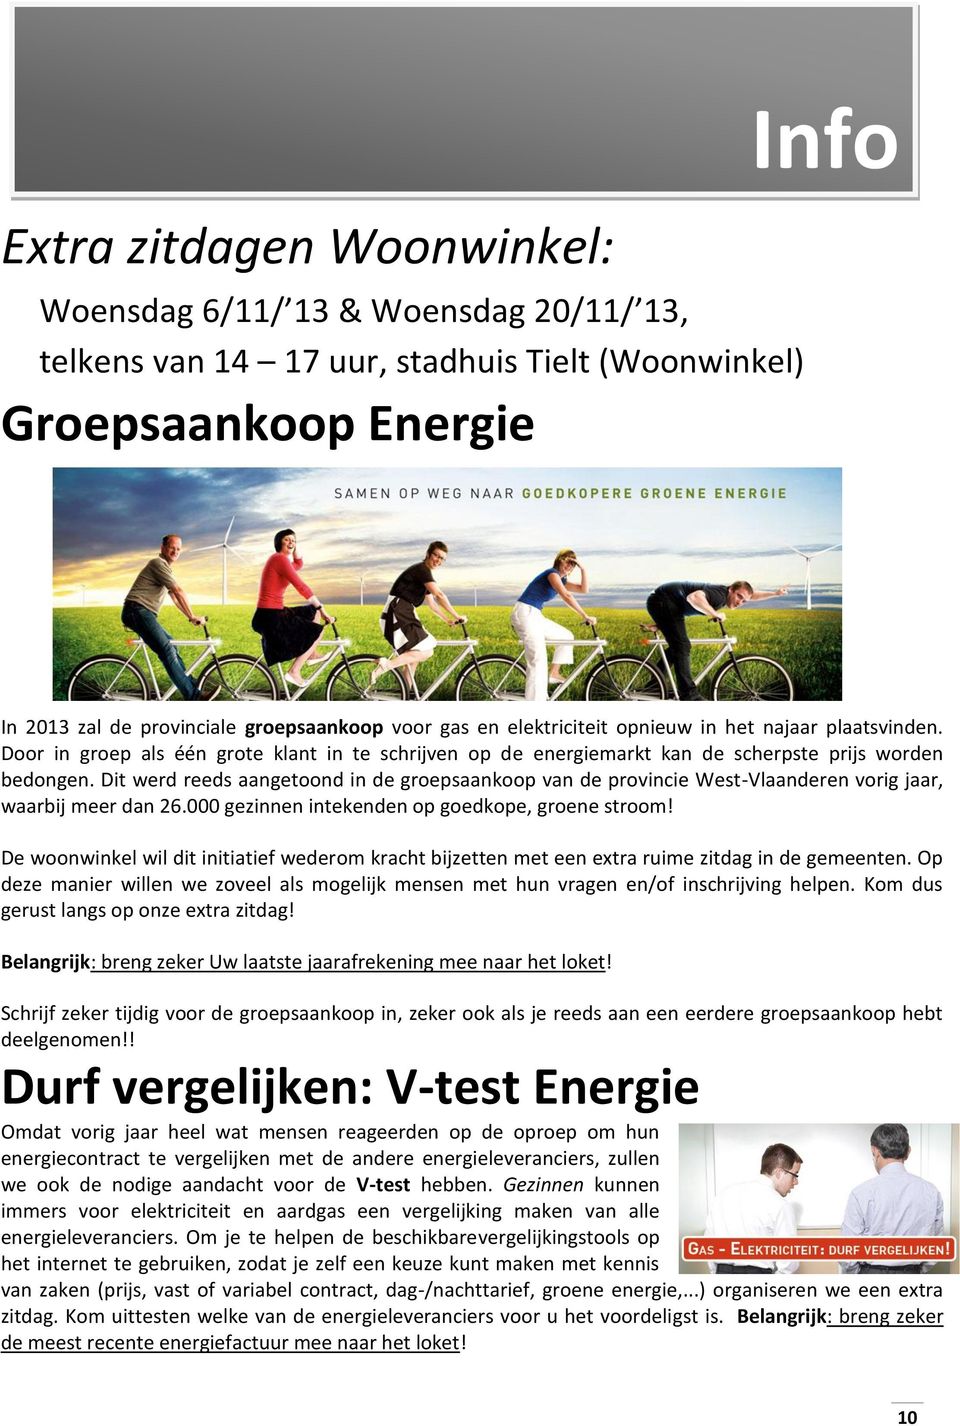 Dit werd reeds aangetoond in de groepsaankoop van de provincie West-Vlaanderen vorig jaar, waarbij meer dan 26.000 gezinnen intekenden op goedkope, groene stroom!